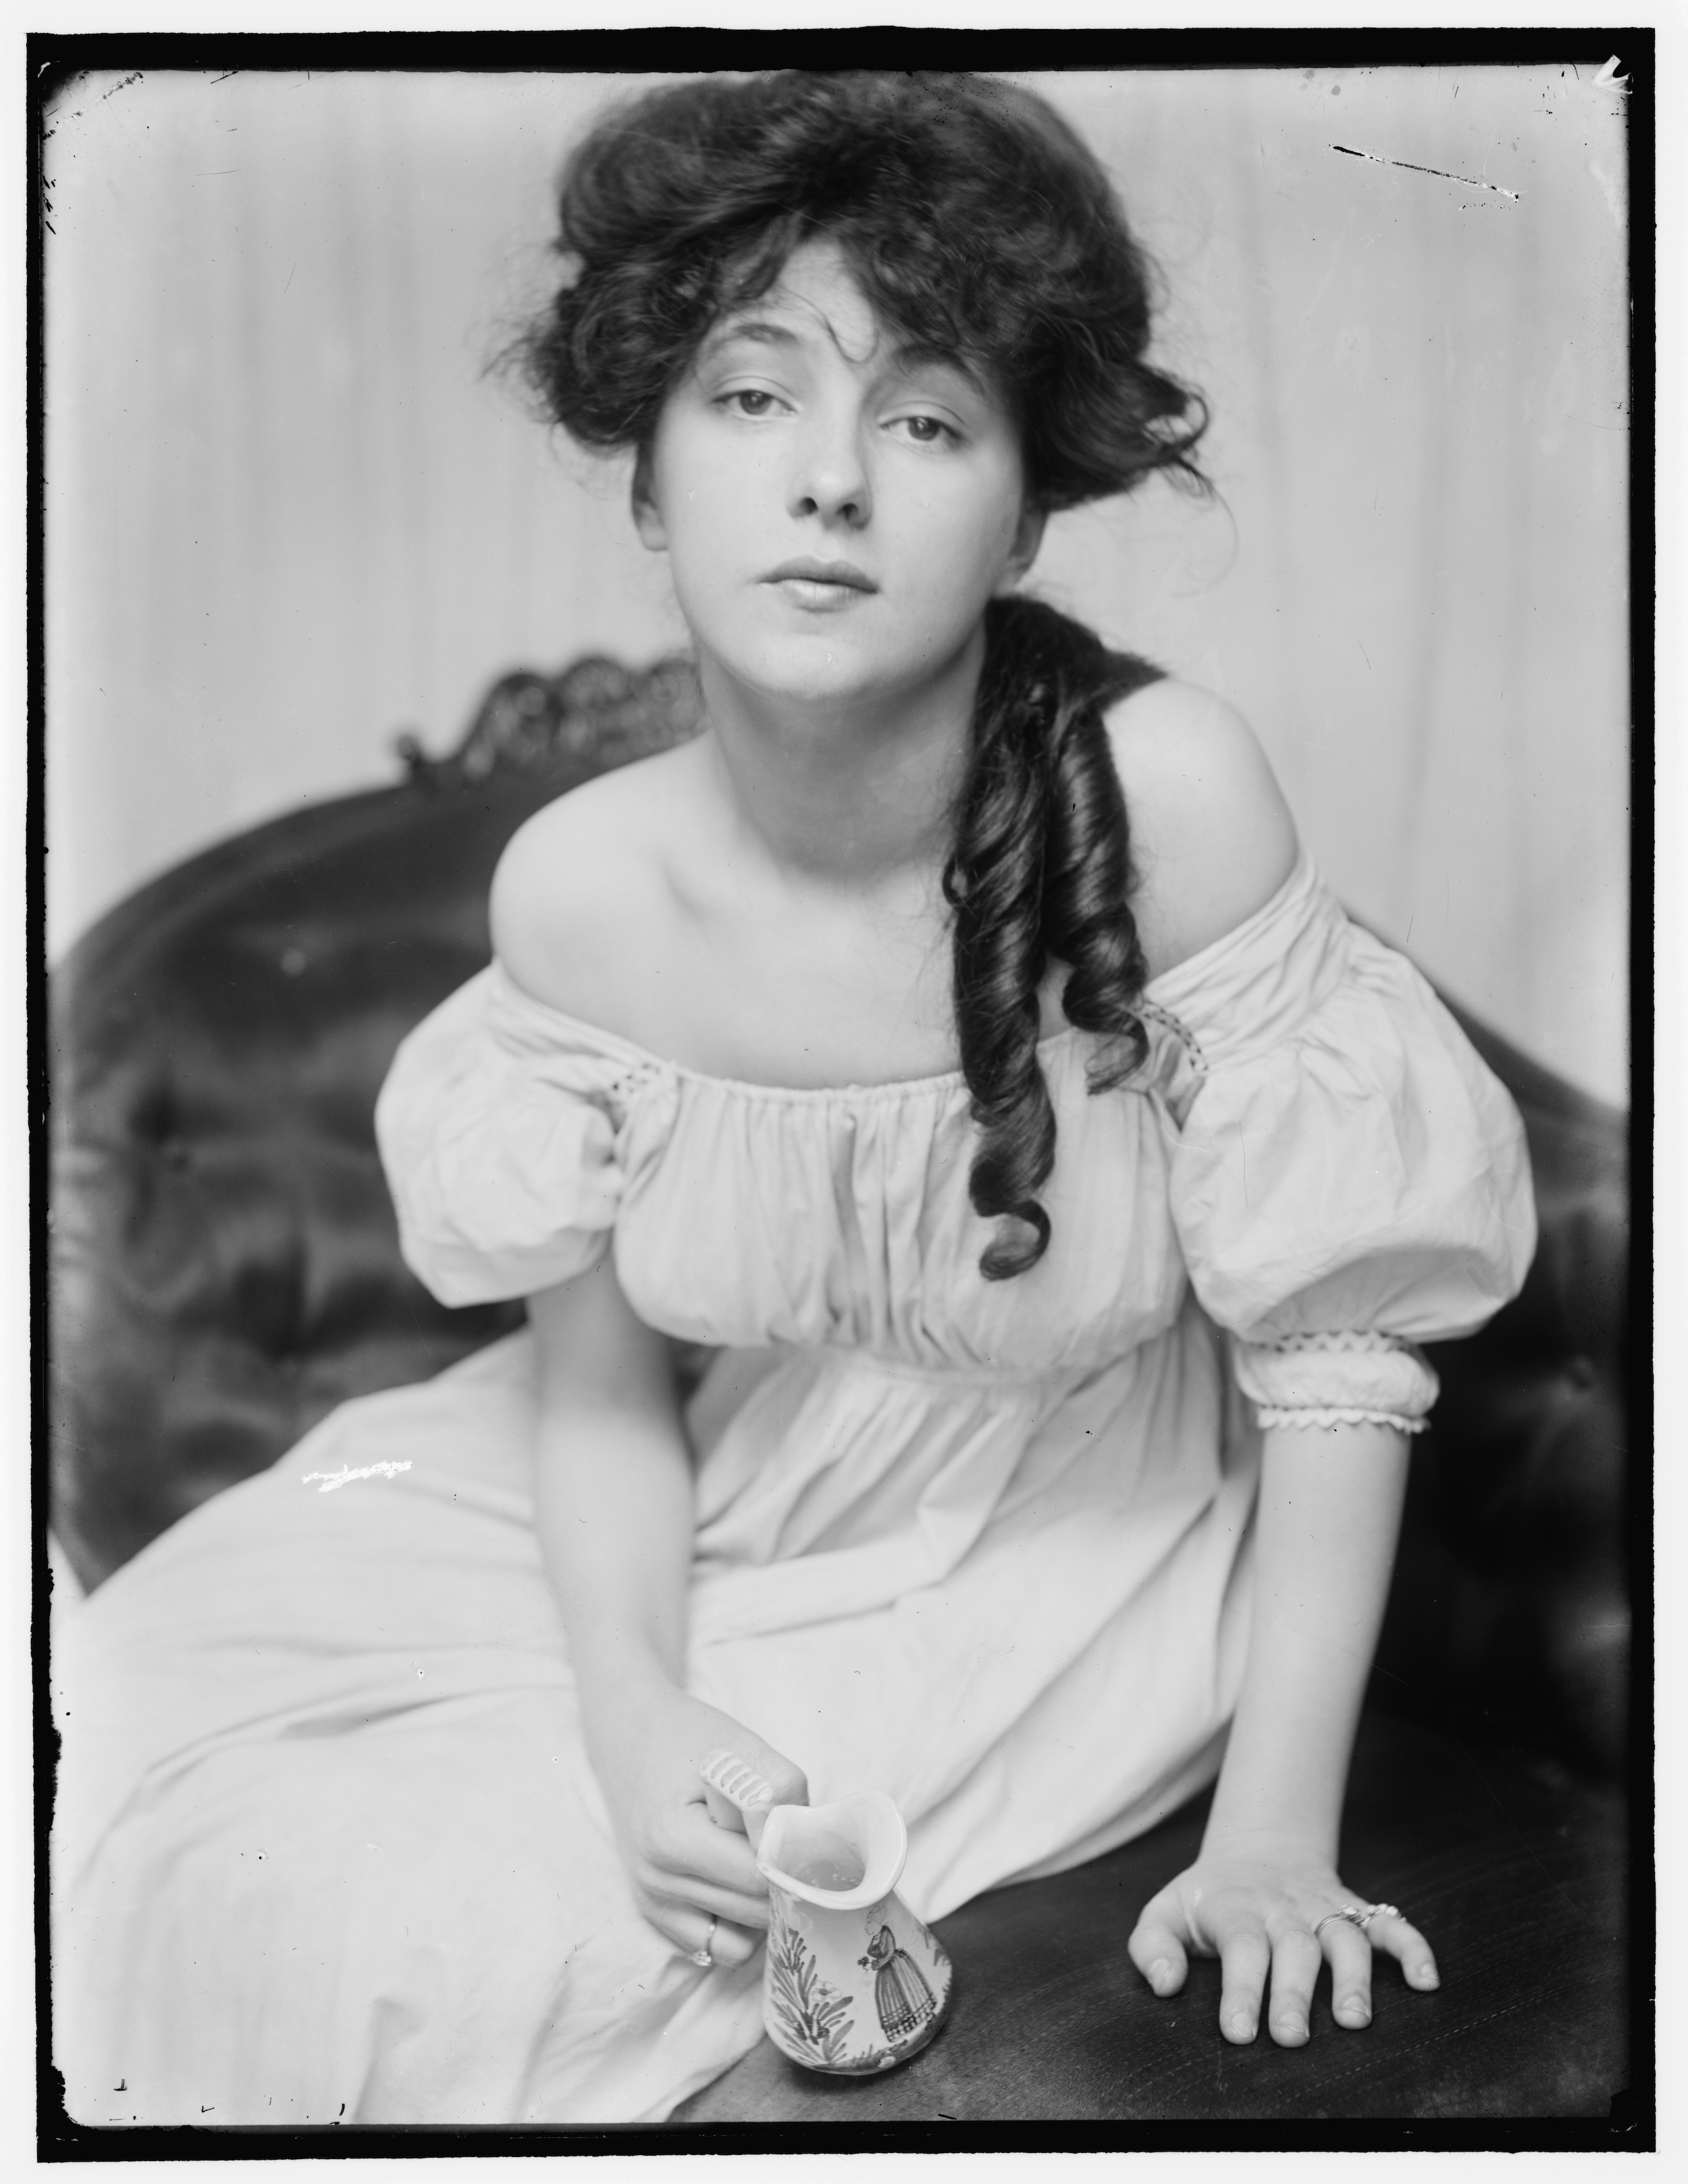 Evelyn Nesbit rond 1900, in de tijd dat ze door Stanford White naar de studio werd gebracht by Gertrude Käsebier - ca. 1900 - 8 x 10 inches 